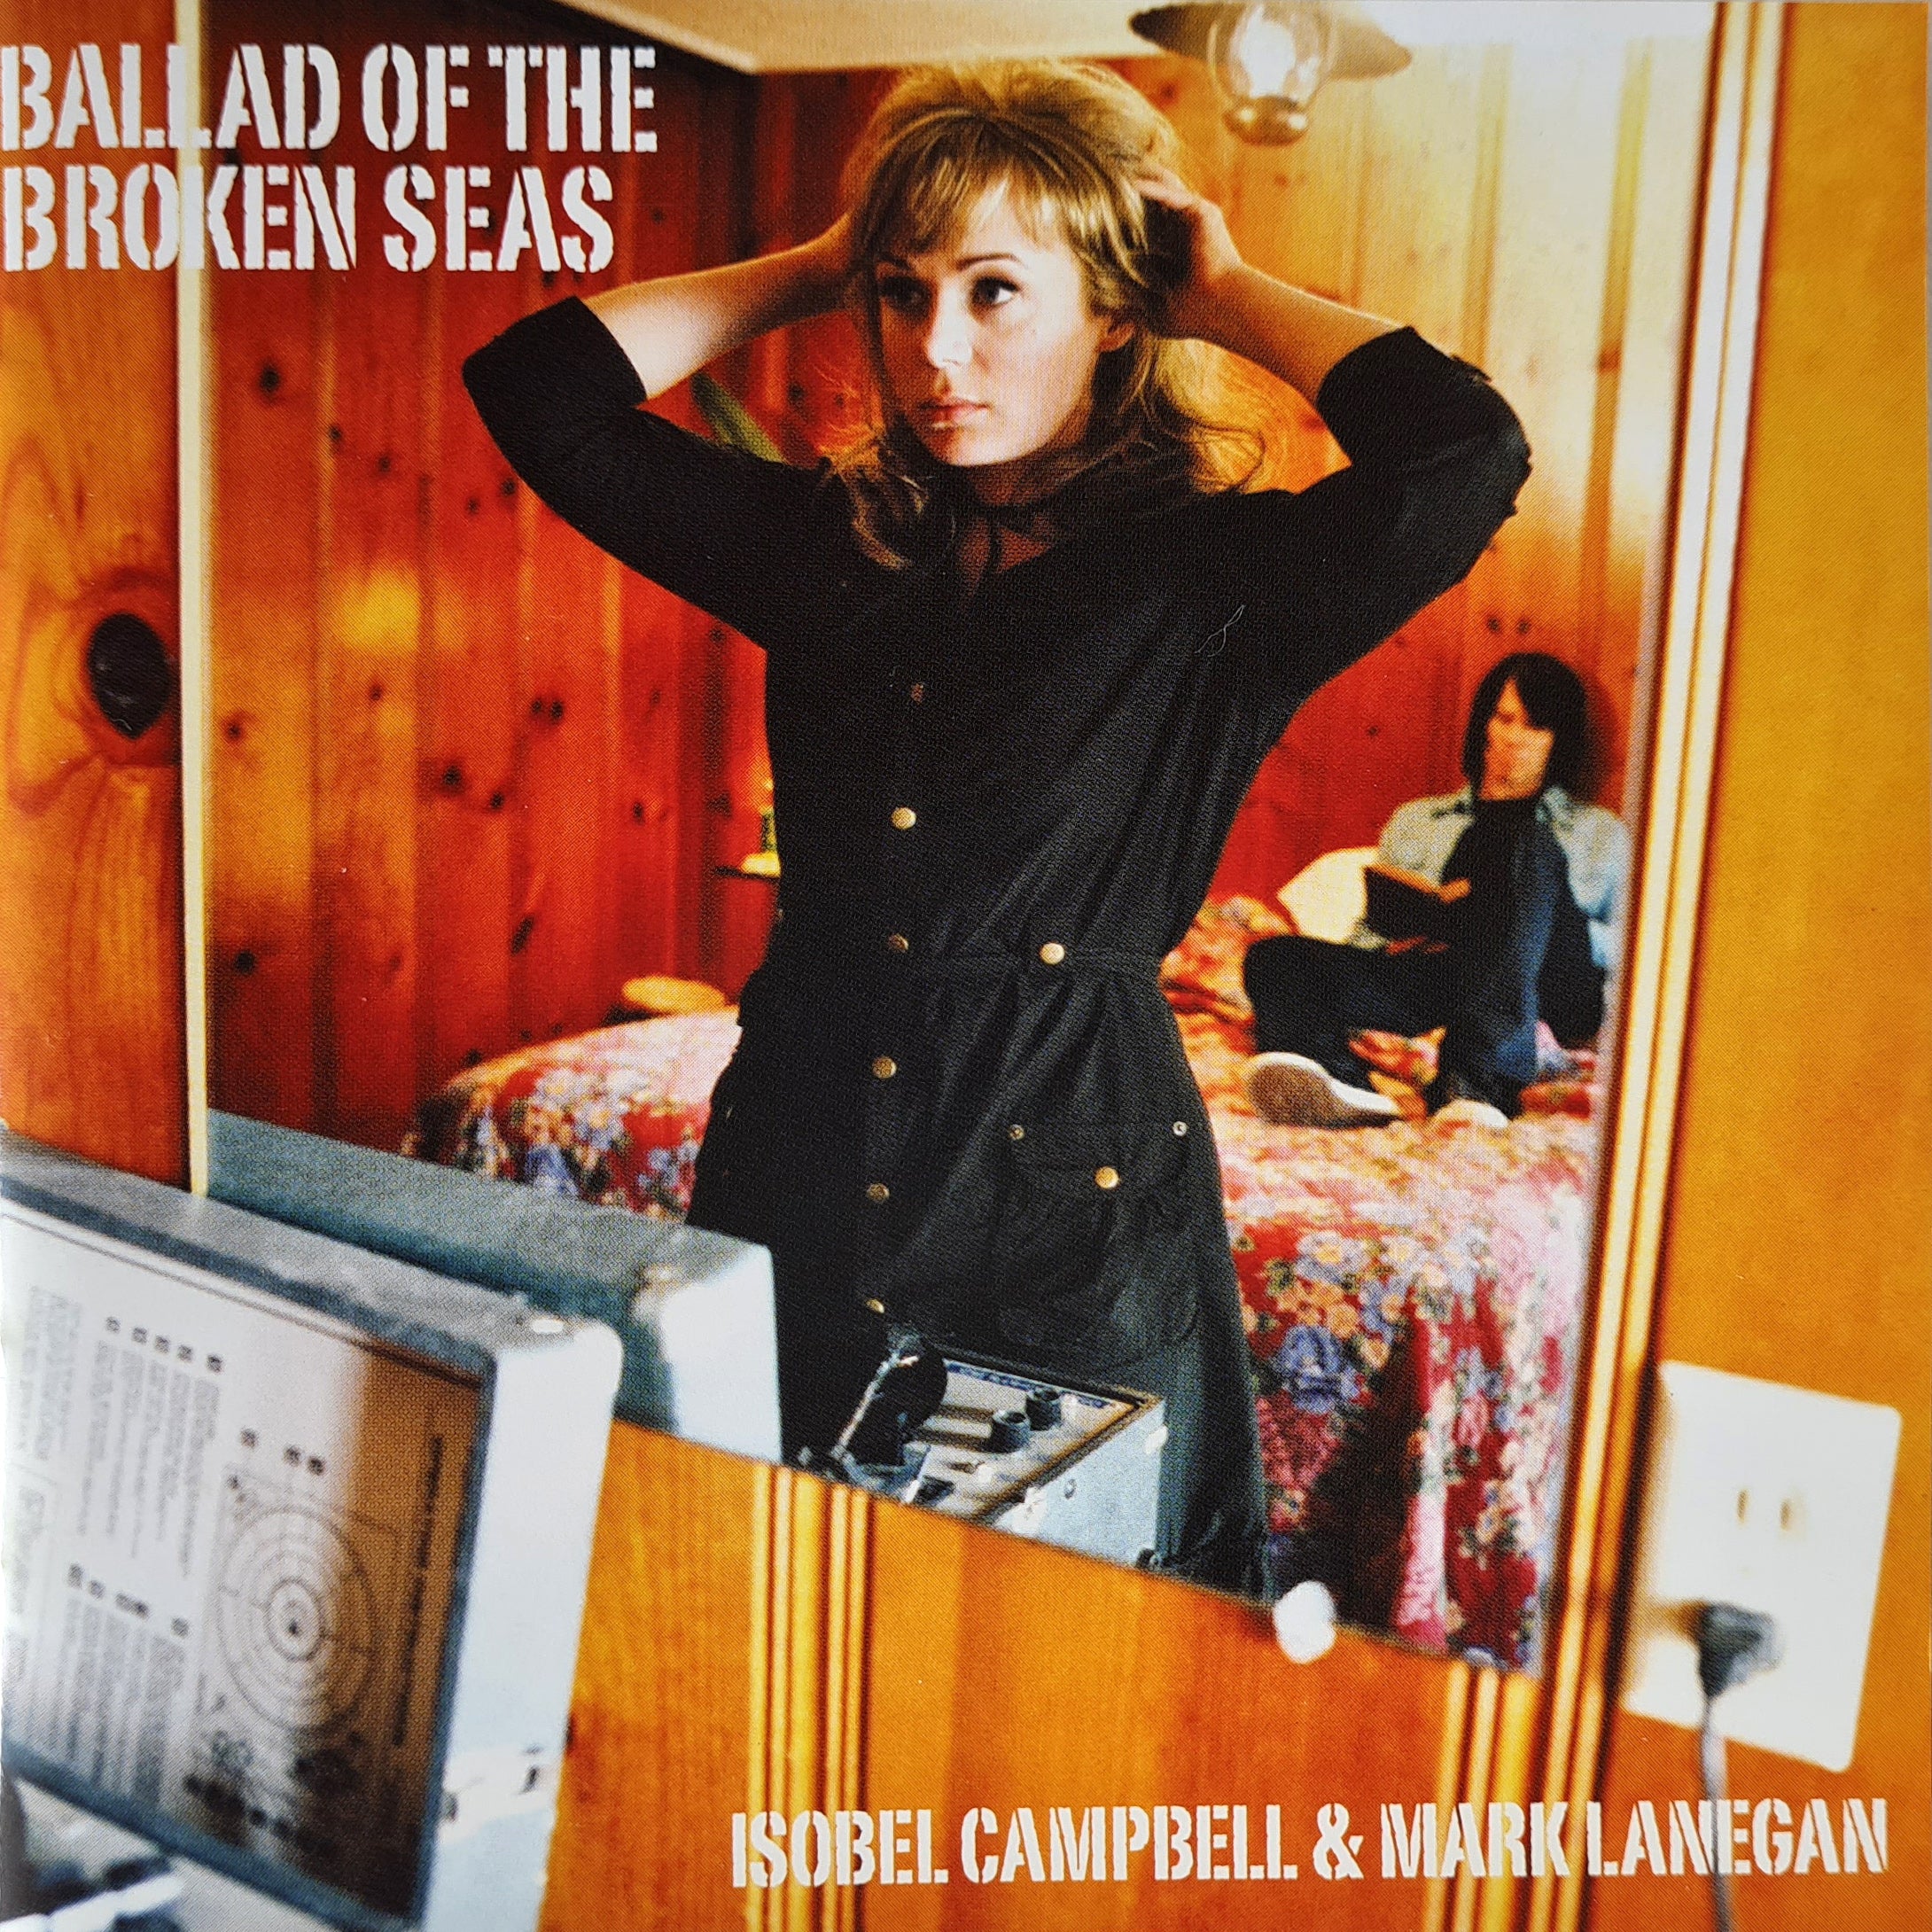 Isobel Campbell & Mark Lanegan - Ballad of the Broken Seas (CD)